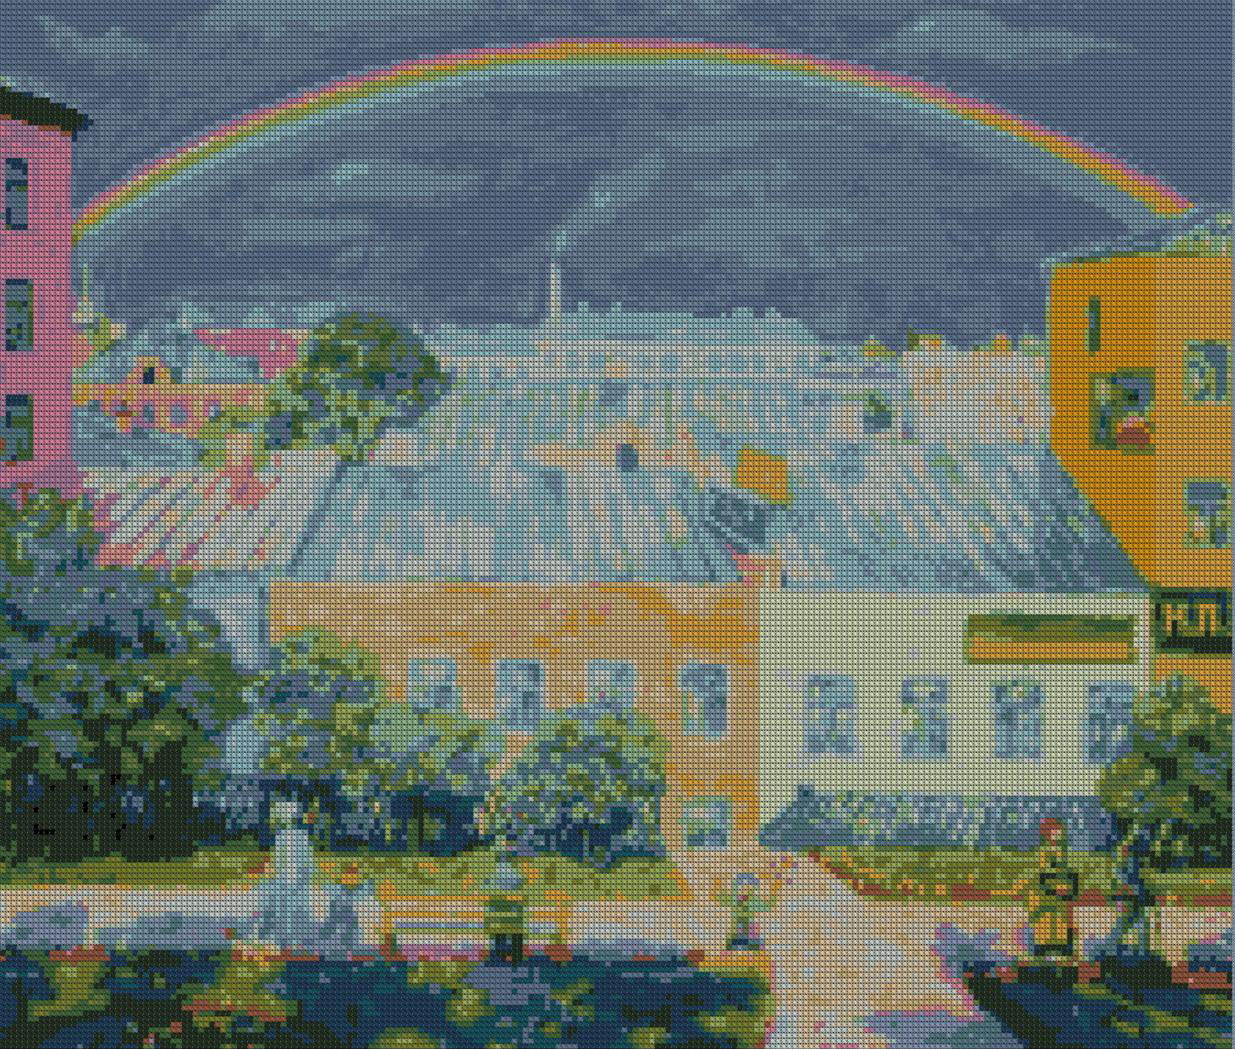 Образец вышивки по картине Крымова Радуга Московский пейзаж